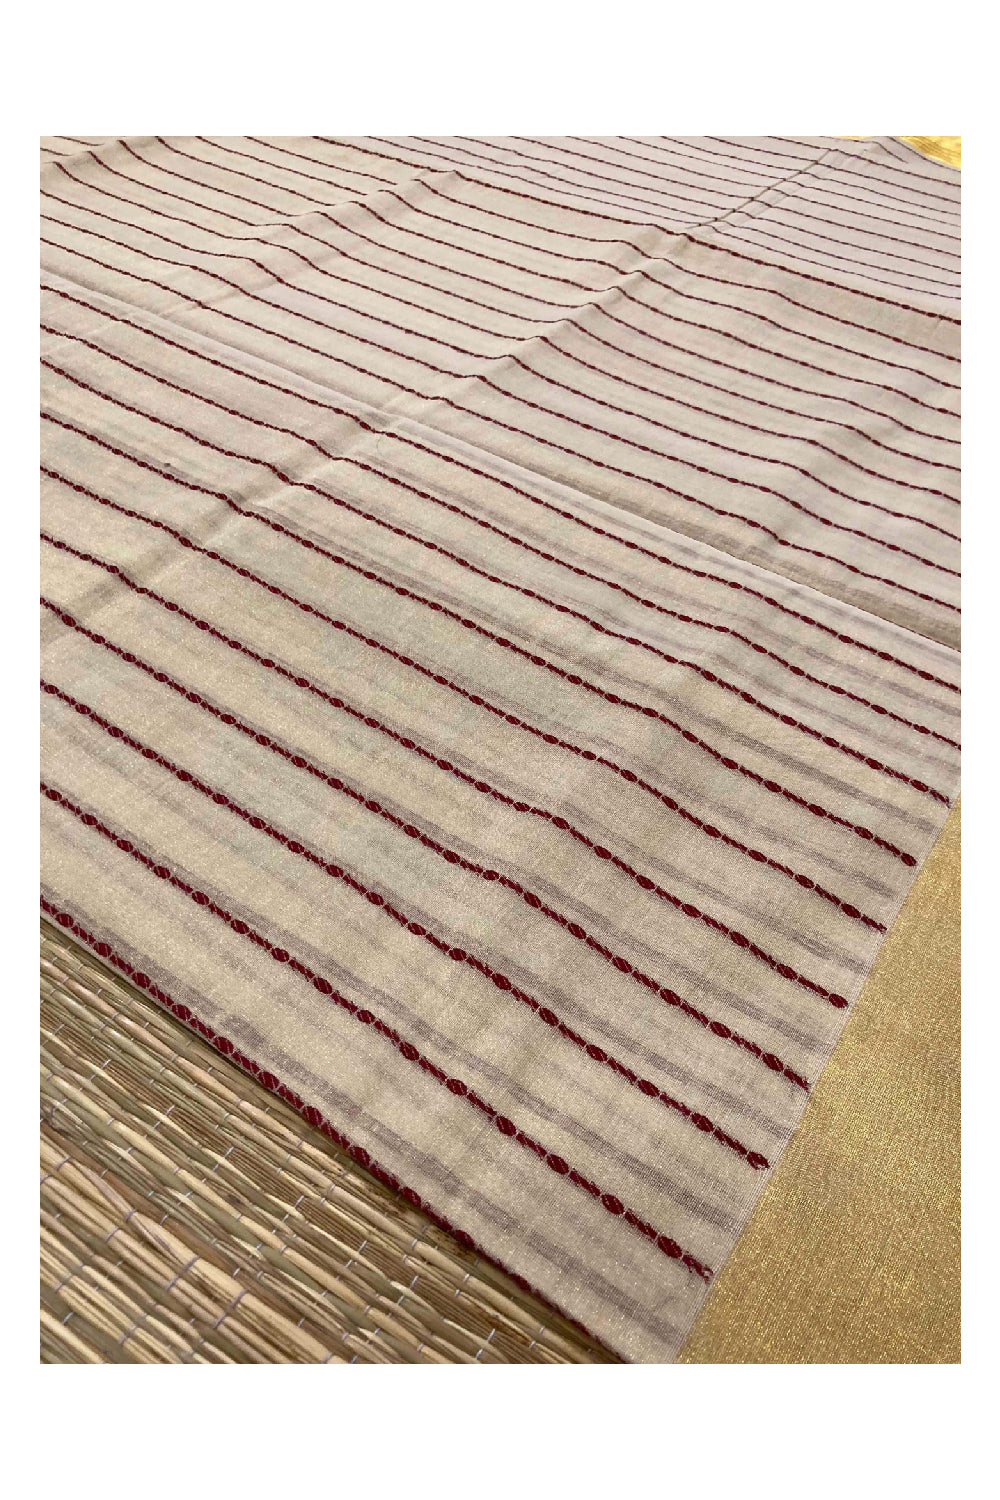 Southloom Kuthampully Handloom Tissue Saree with Kasavu and Marron Stripes Body